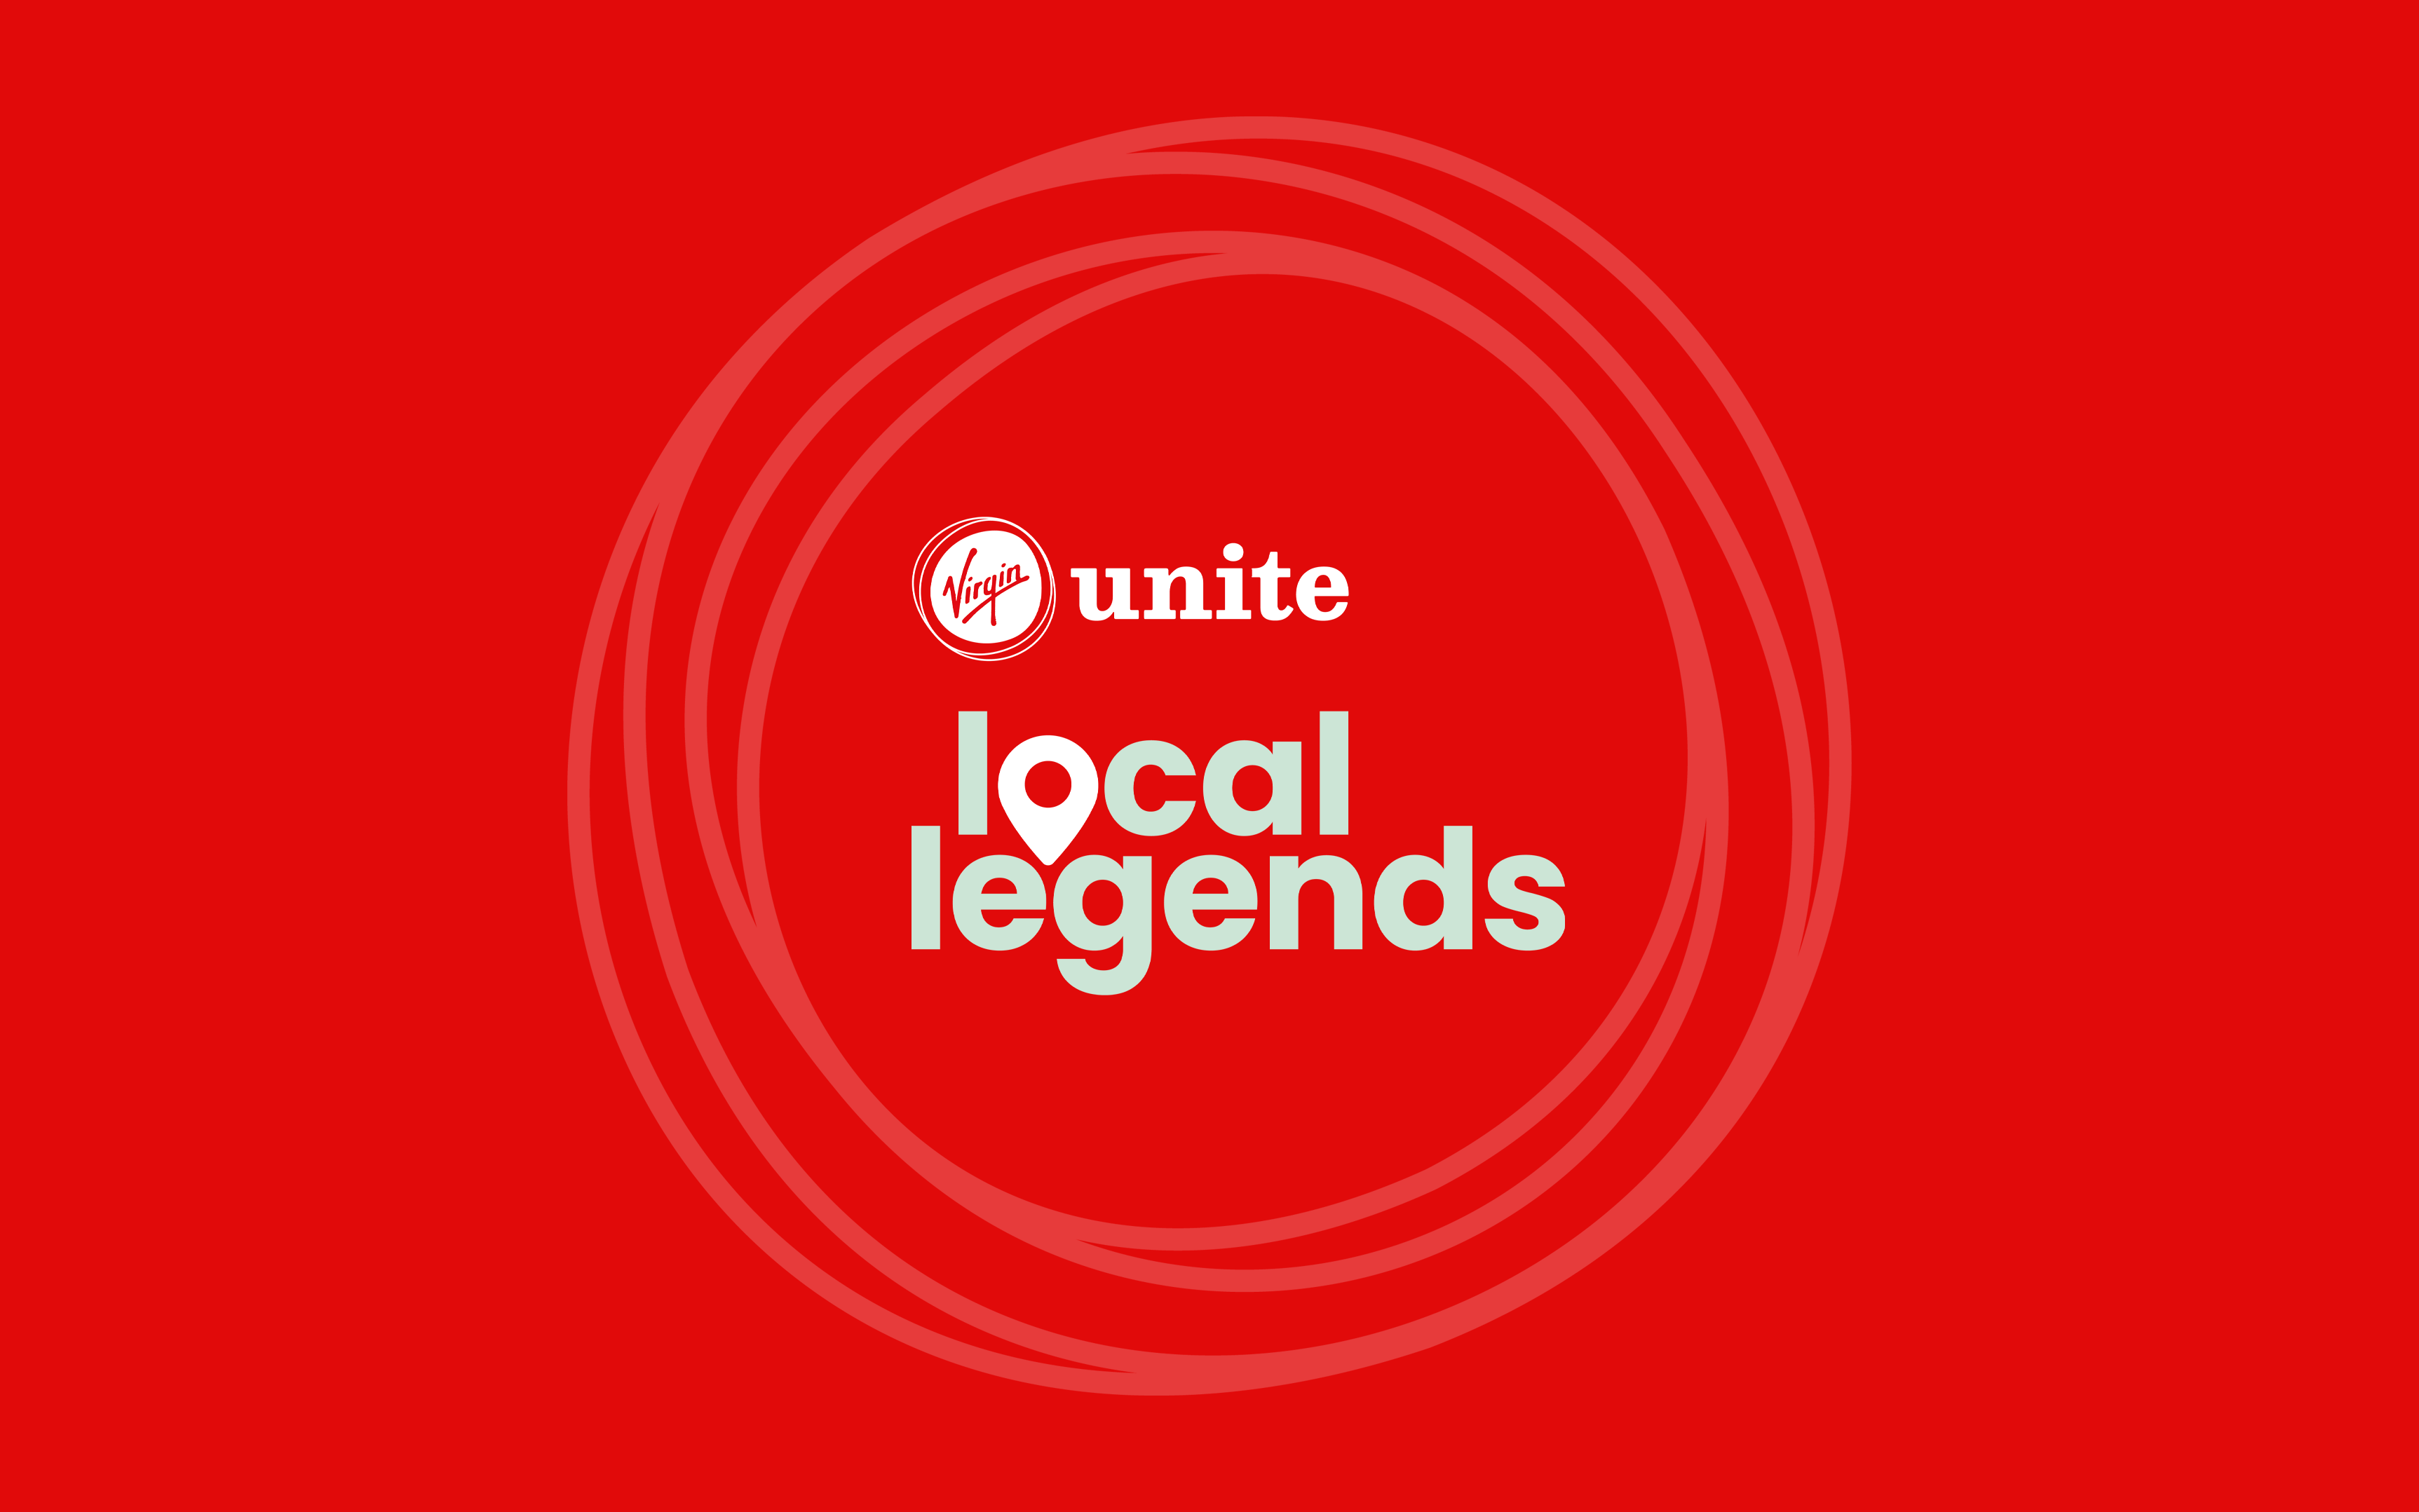 Virgin Unite Local Legends